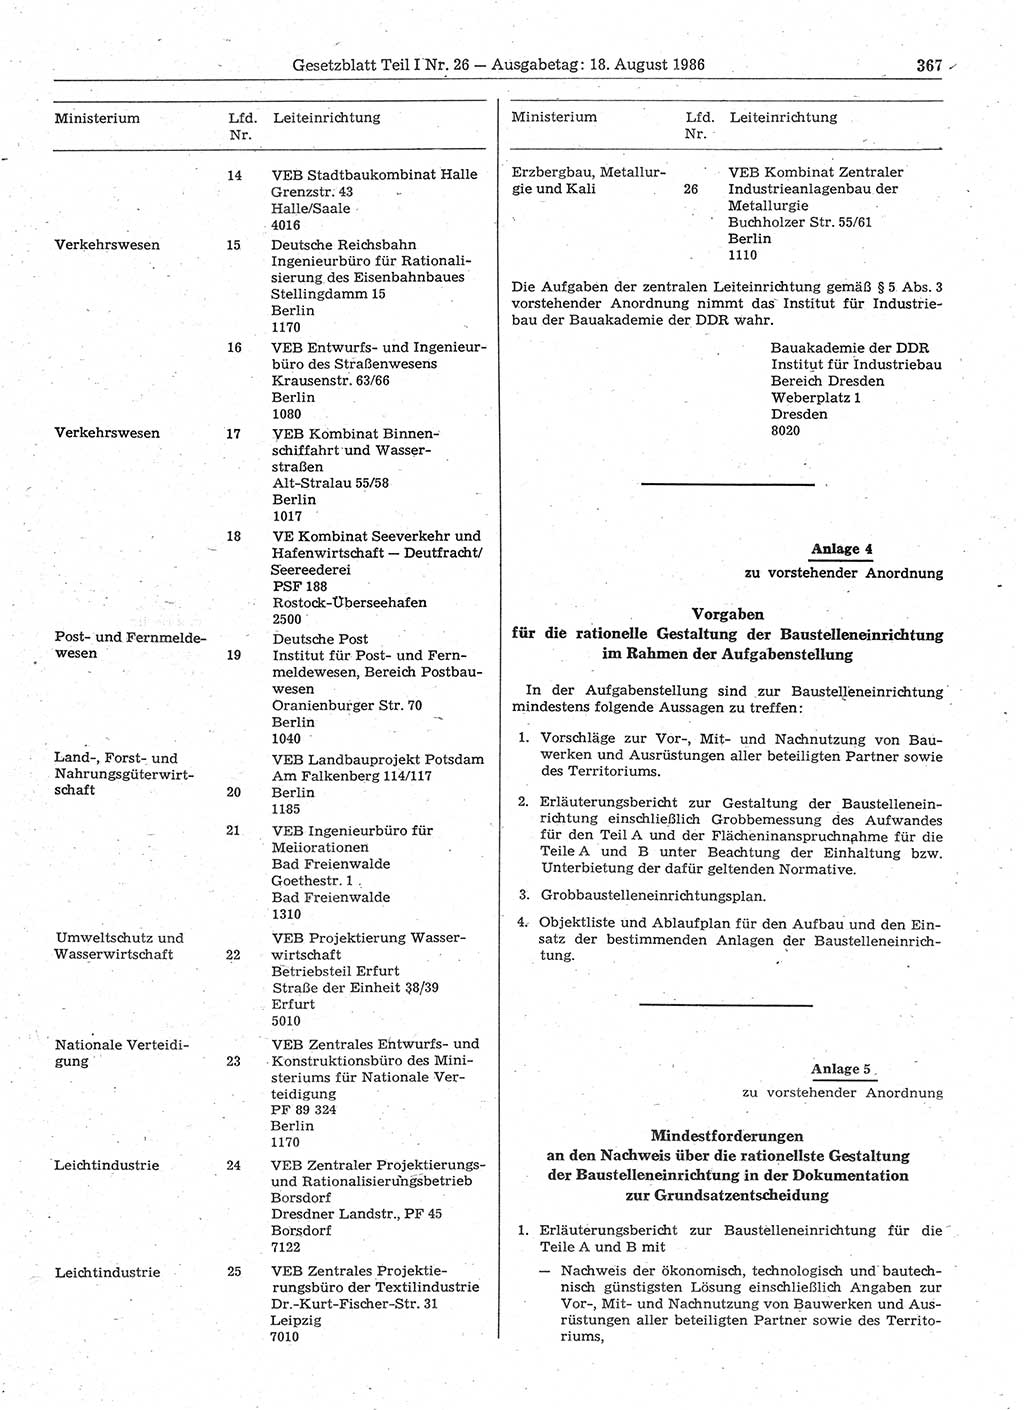 Gesetzblatt (GBl.) der Deutschen Demokratischen Republik (DDR) Teil Ⅰ 1986, Seite 367 (GBl. DDR Ⅰ 1986, S. 367)